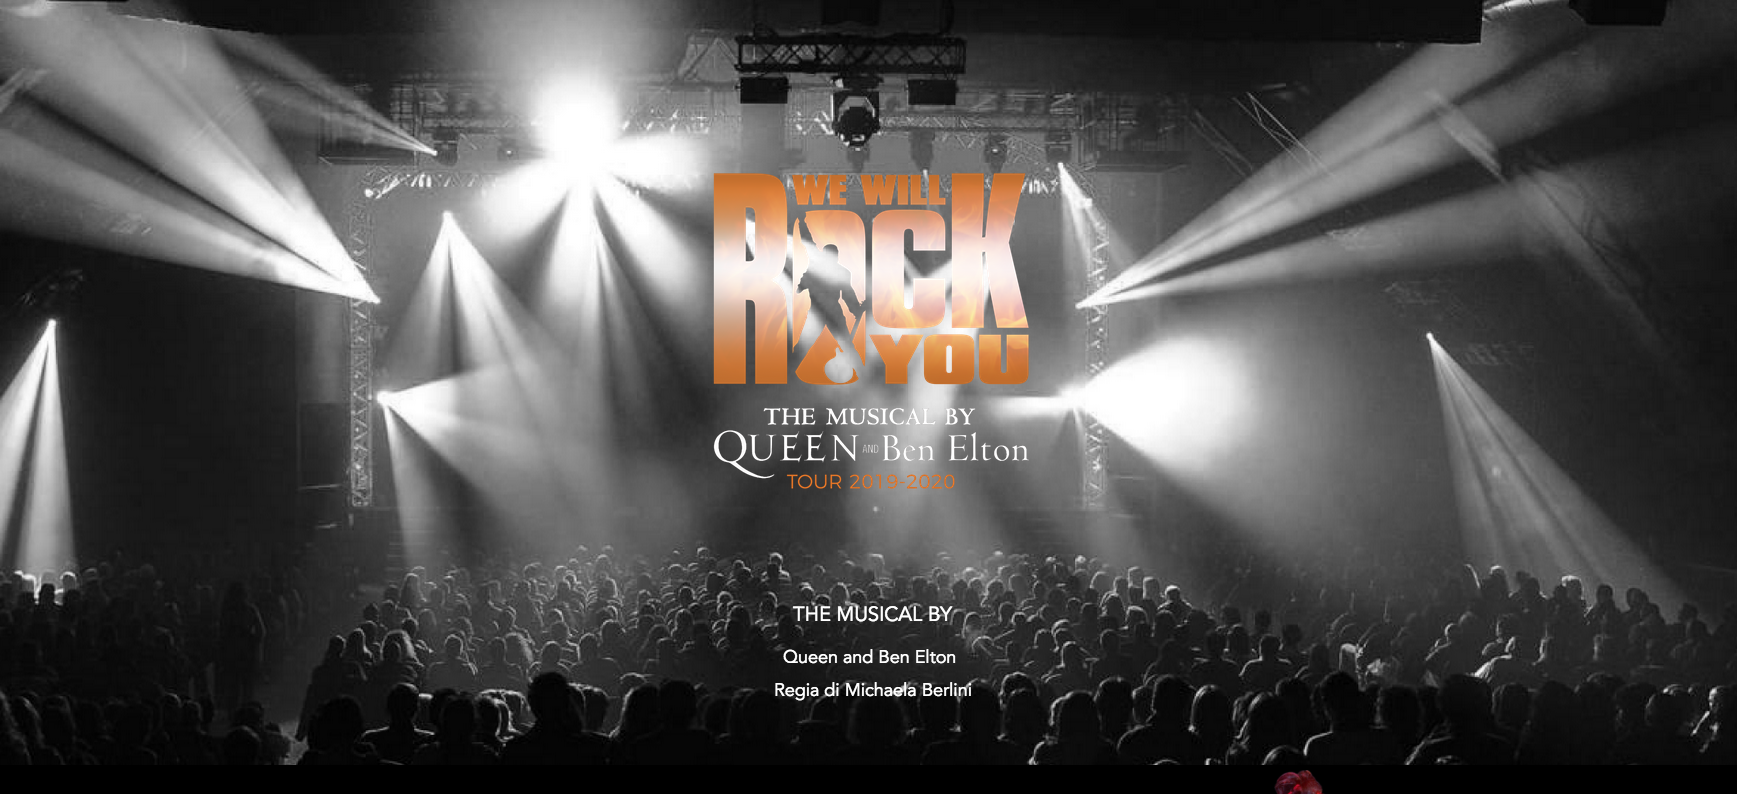 WE WILL ROCK YOU  |  Rock in corso al teatro Brancaccio con la nuova stagione della Rock Opera  di “WE WILL ROCK YOU”